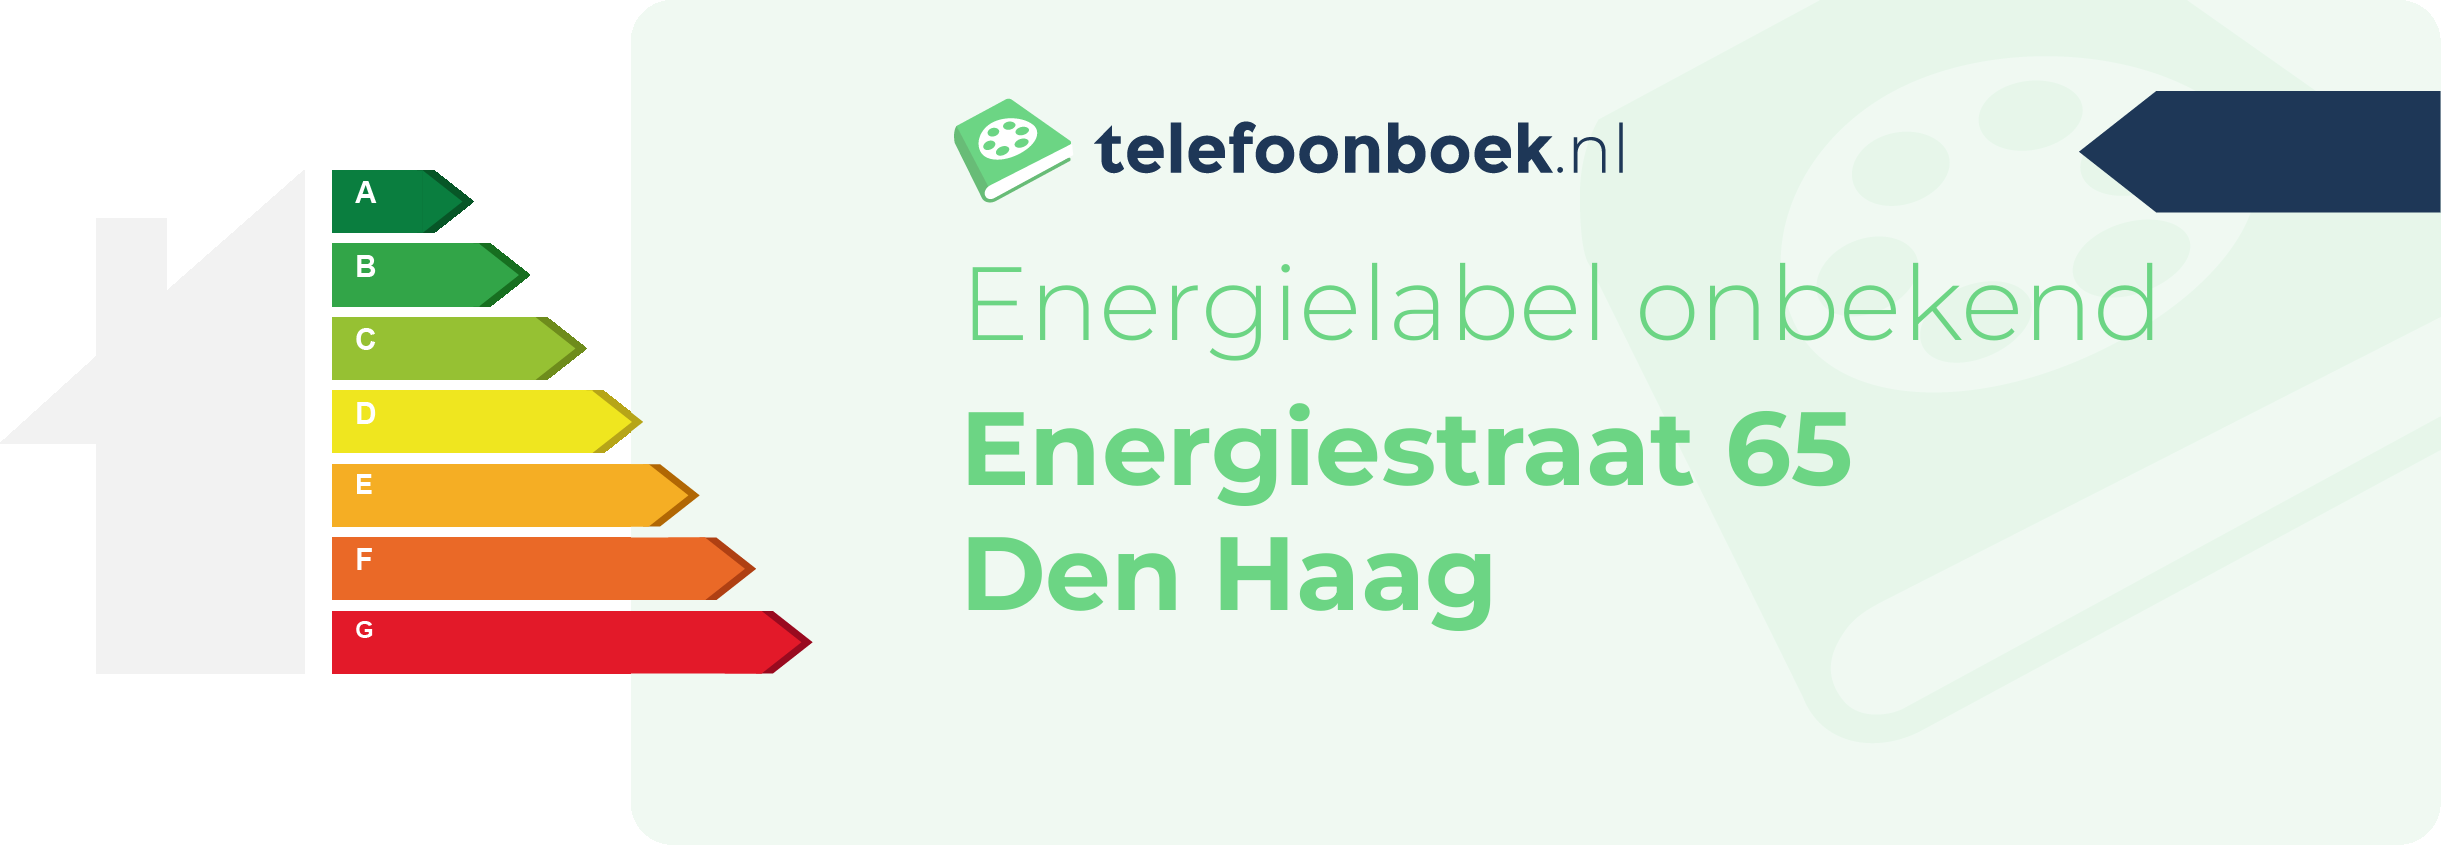 Energielabel Energiestraat 65 Den Haag